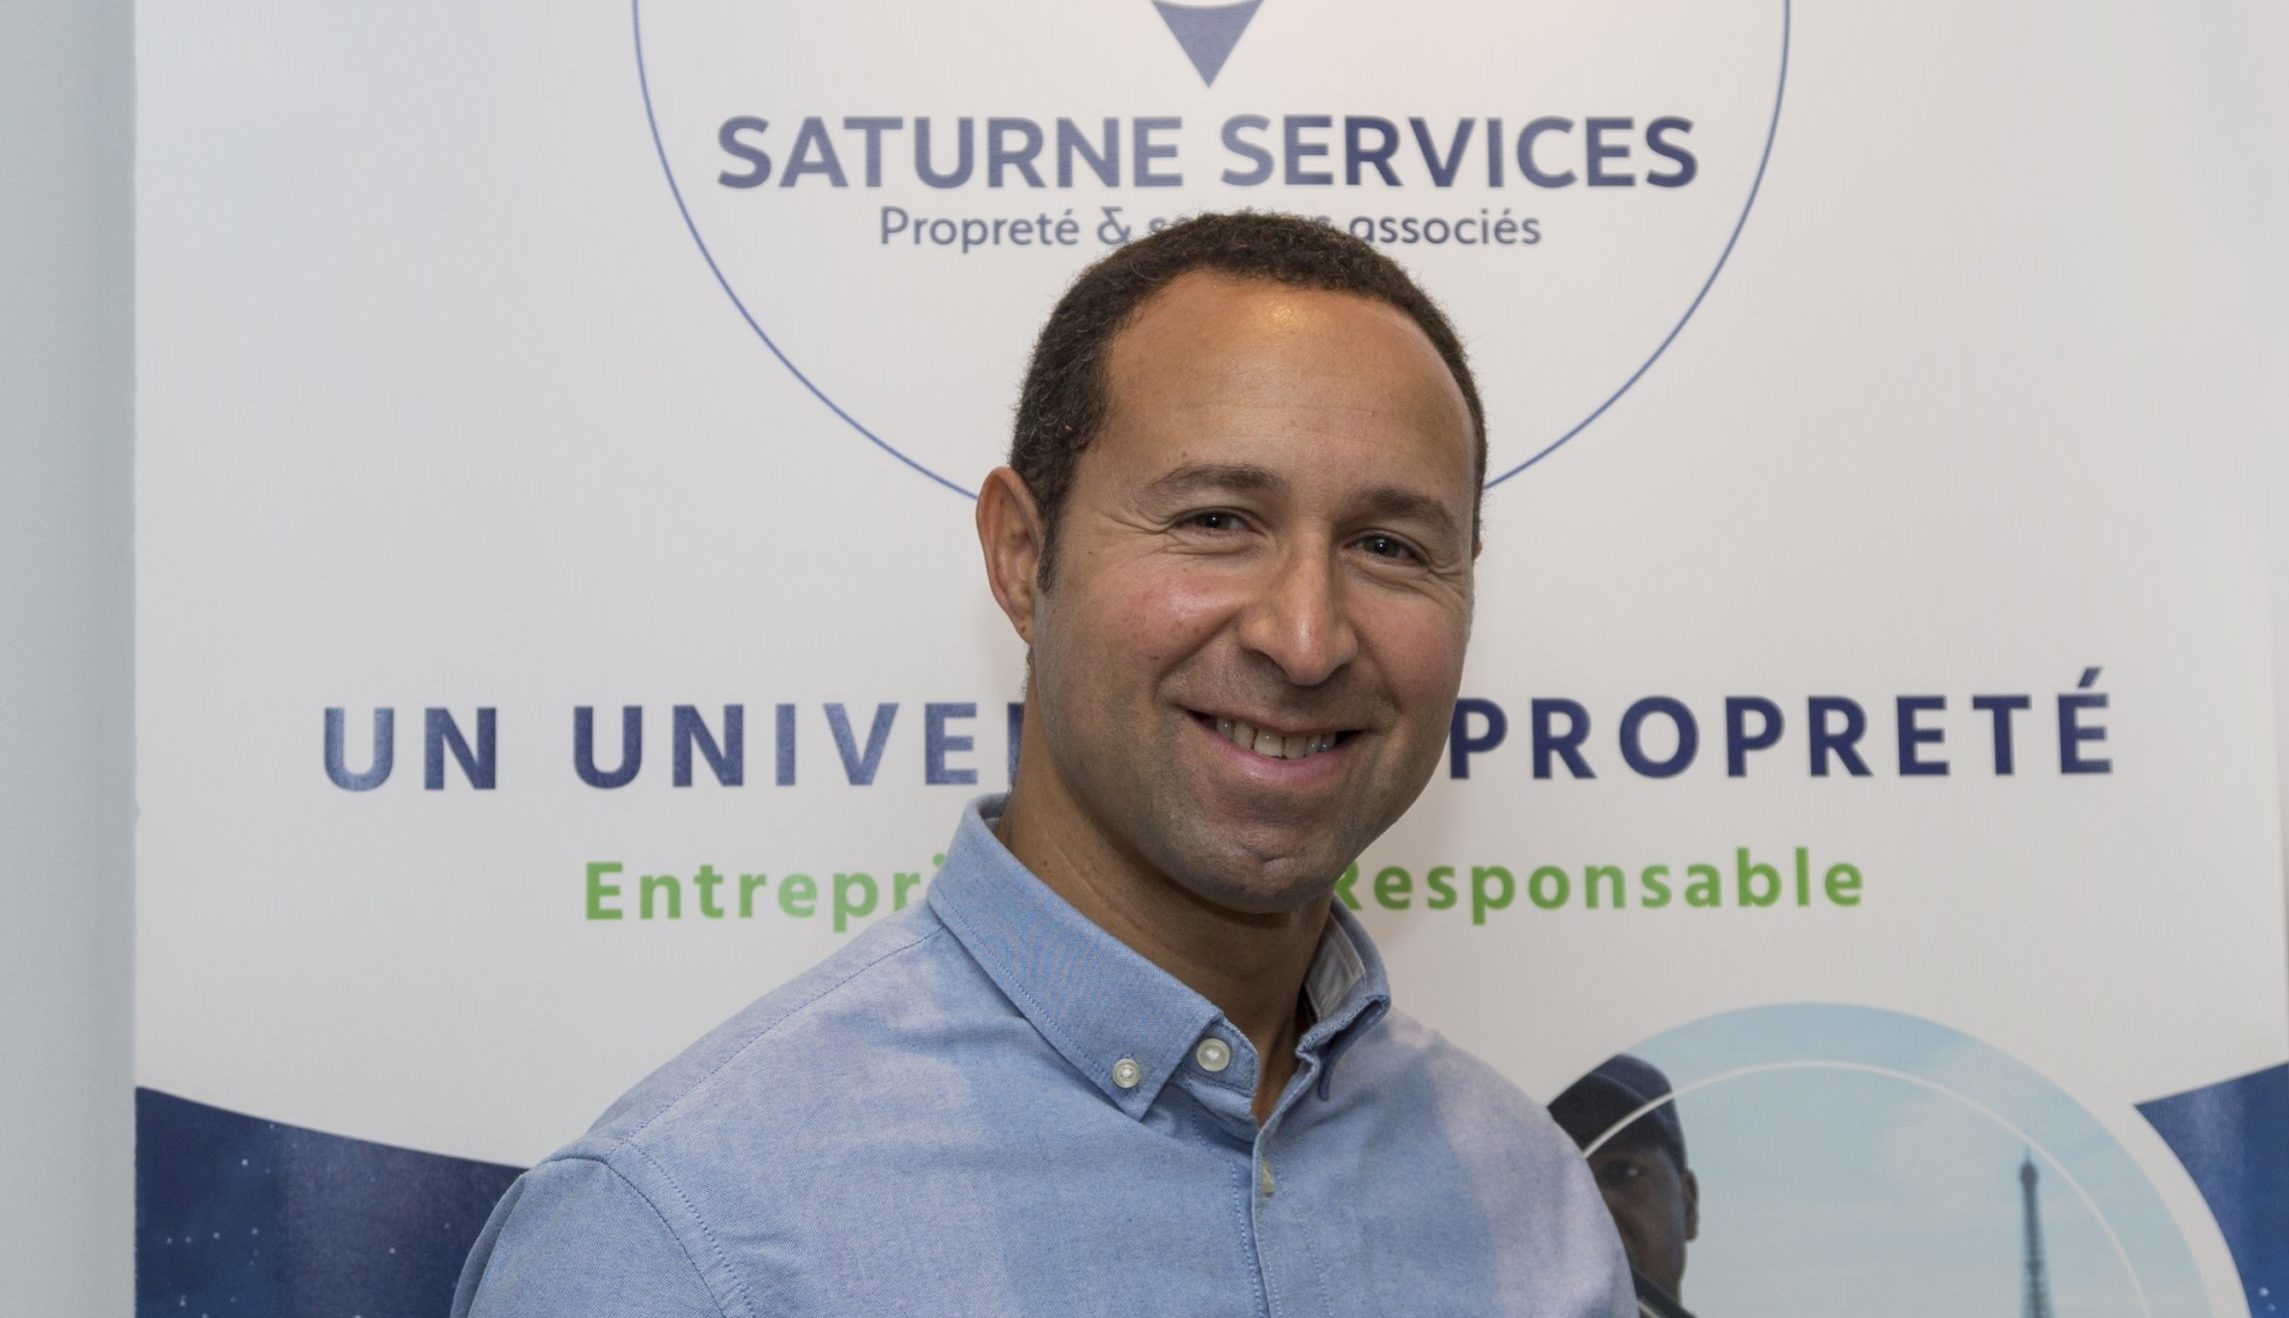 Le Groupe Saturne - Prestation - Actualités - Karim Bellazougui - Un univers de propreté - Nettoyage professionnel - Entreprise de nettoyage